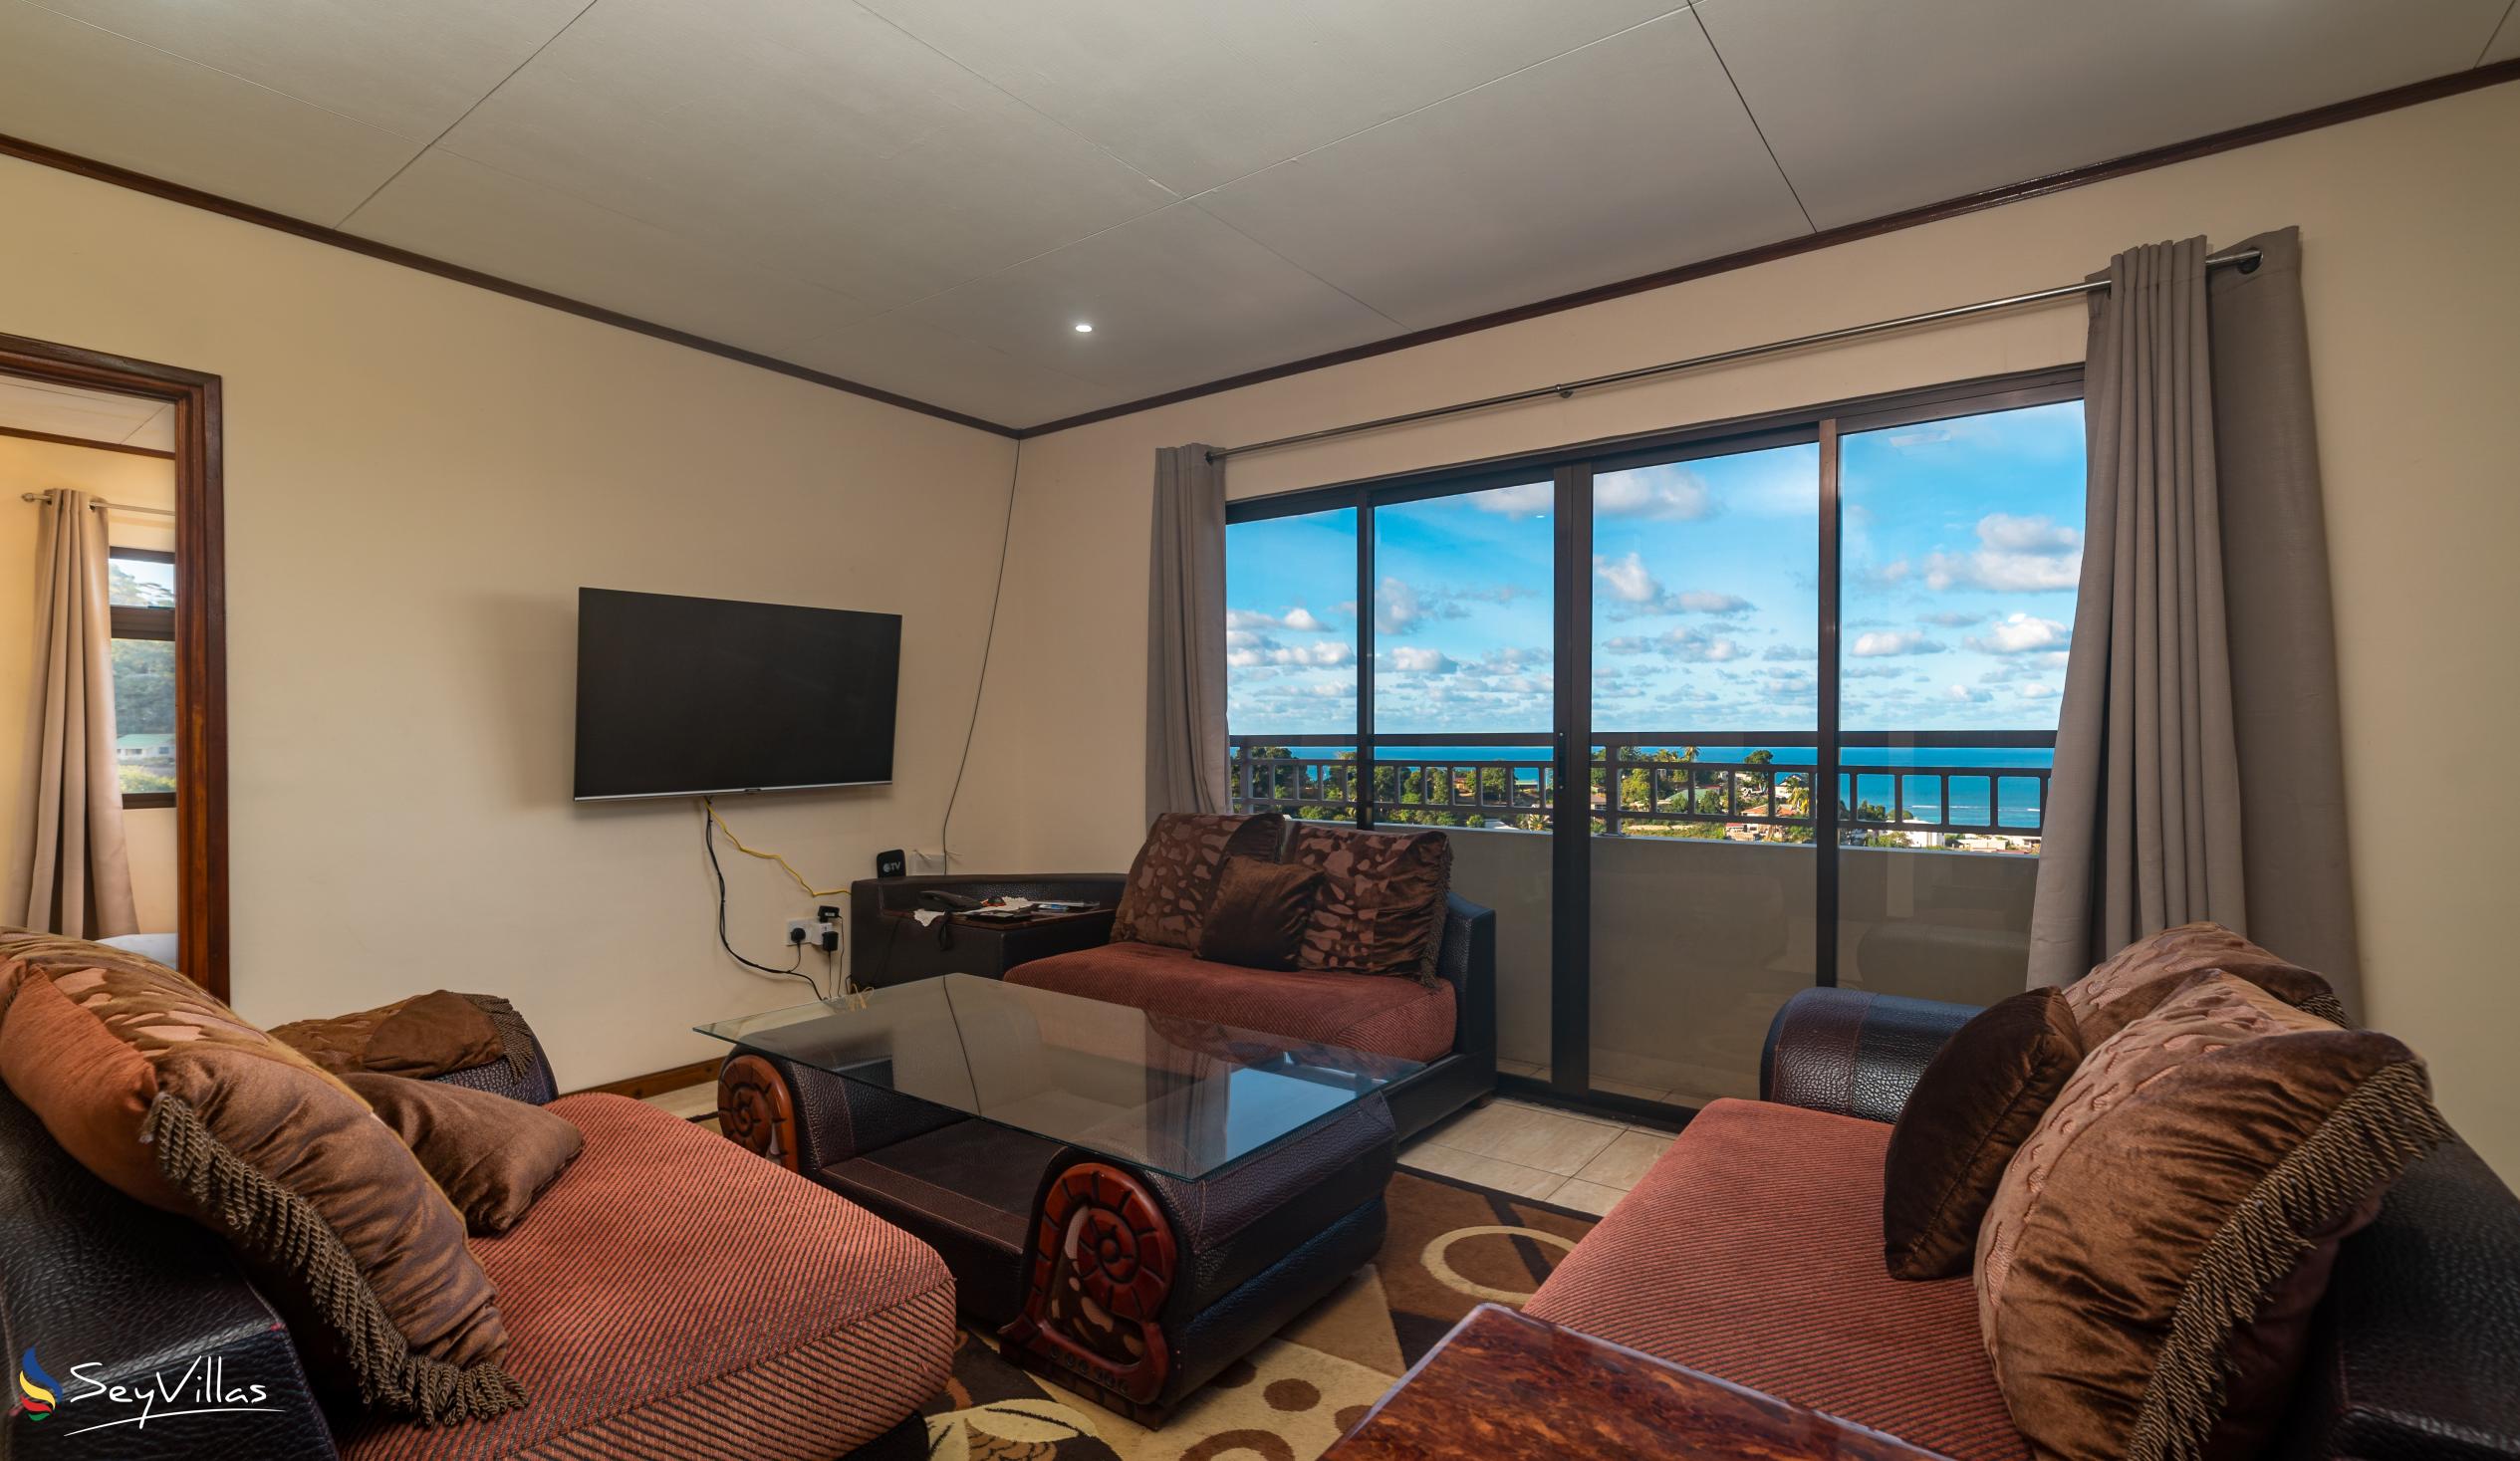 Foto 43: Maison L'Horizon - Appartamento con 2 camere Soley - Mahé (Seychelles)